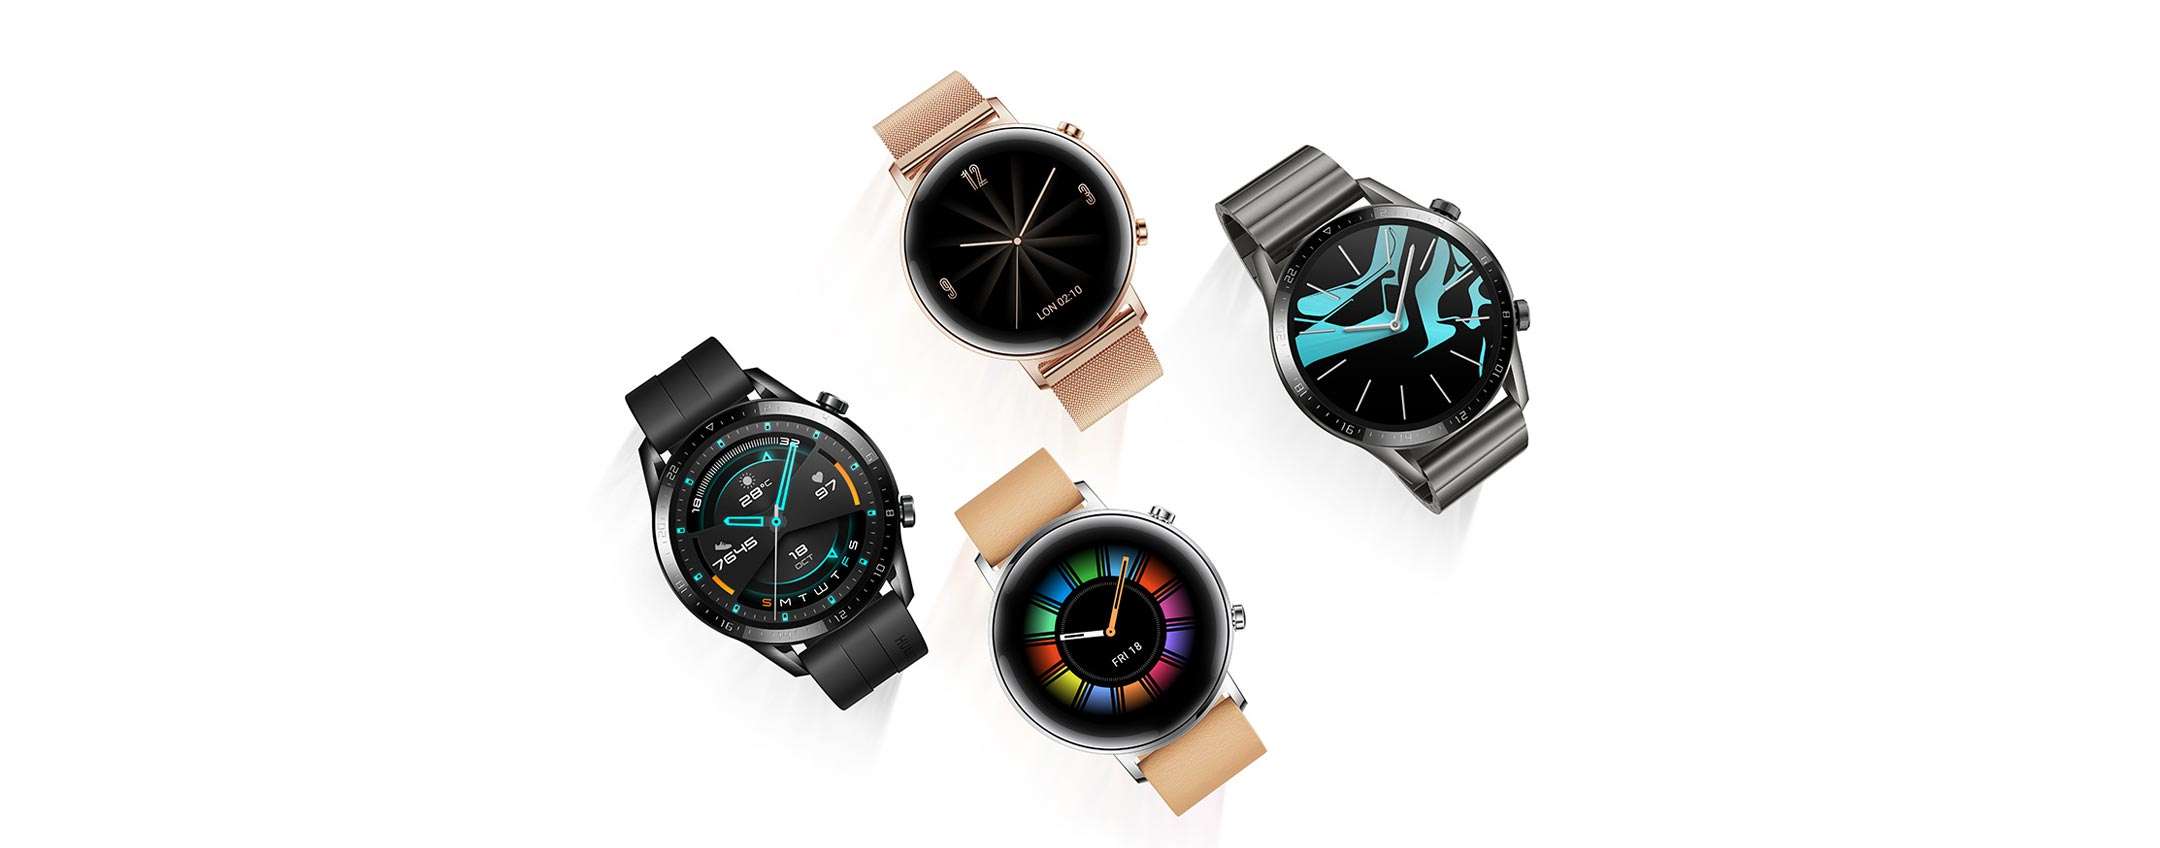 Huawei Watch GT 2 si aggiorna: tutte le novità della build